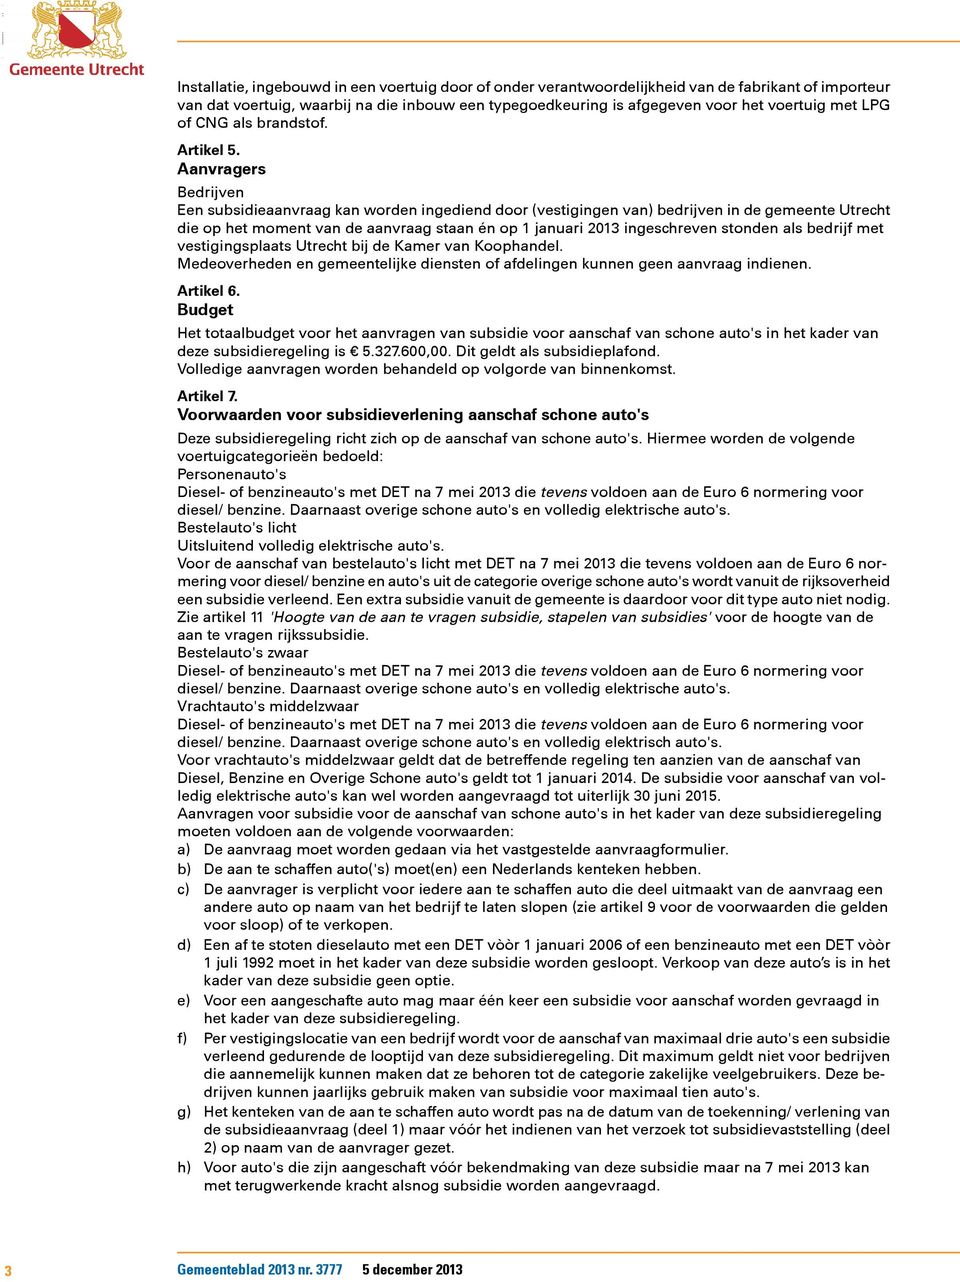 Aanvragers Bedrijven Een subsidieaanvraag kan worden ingediend door (vestigingen van) bedrijven in de gemeente Utrecht die op het moment van de aanvraag staan én op 1 januari 2013 ingeschreven